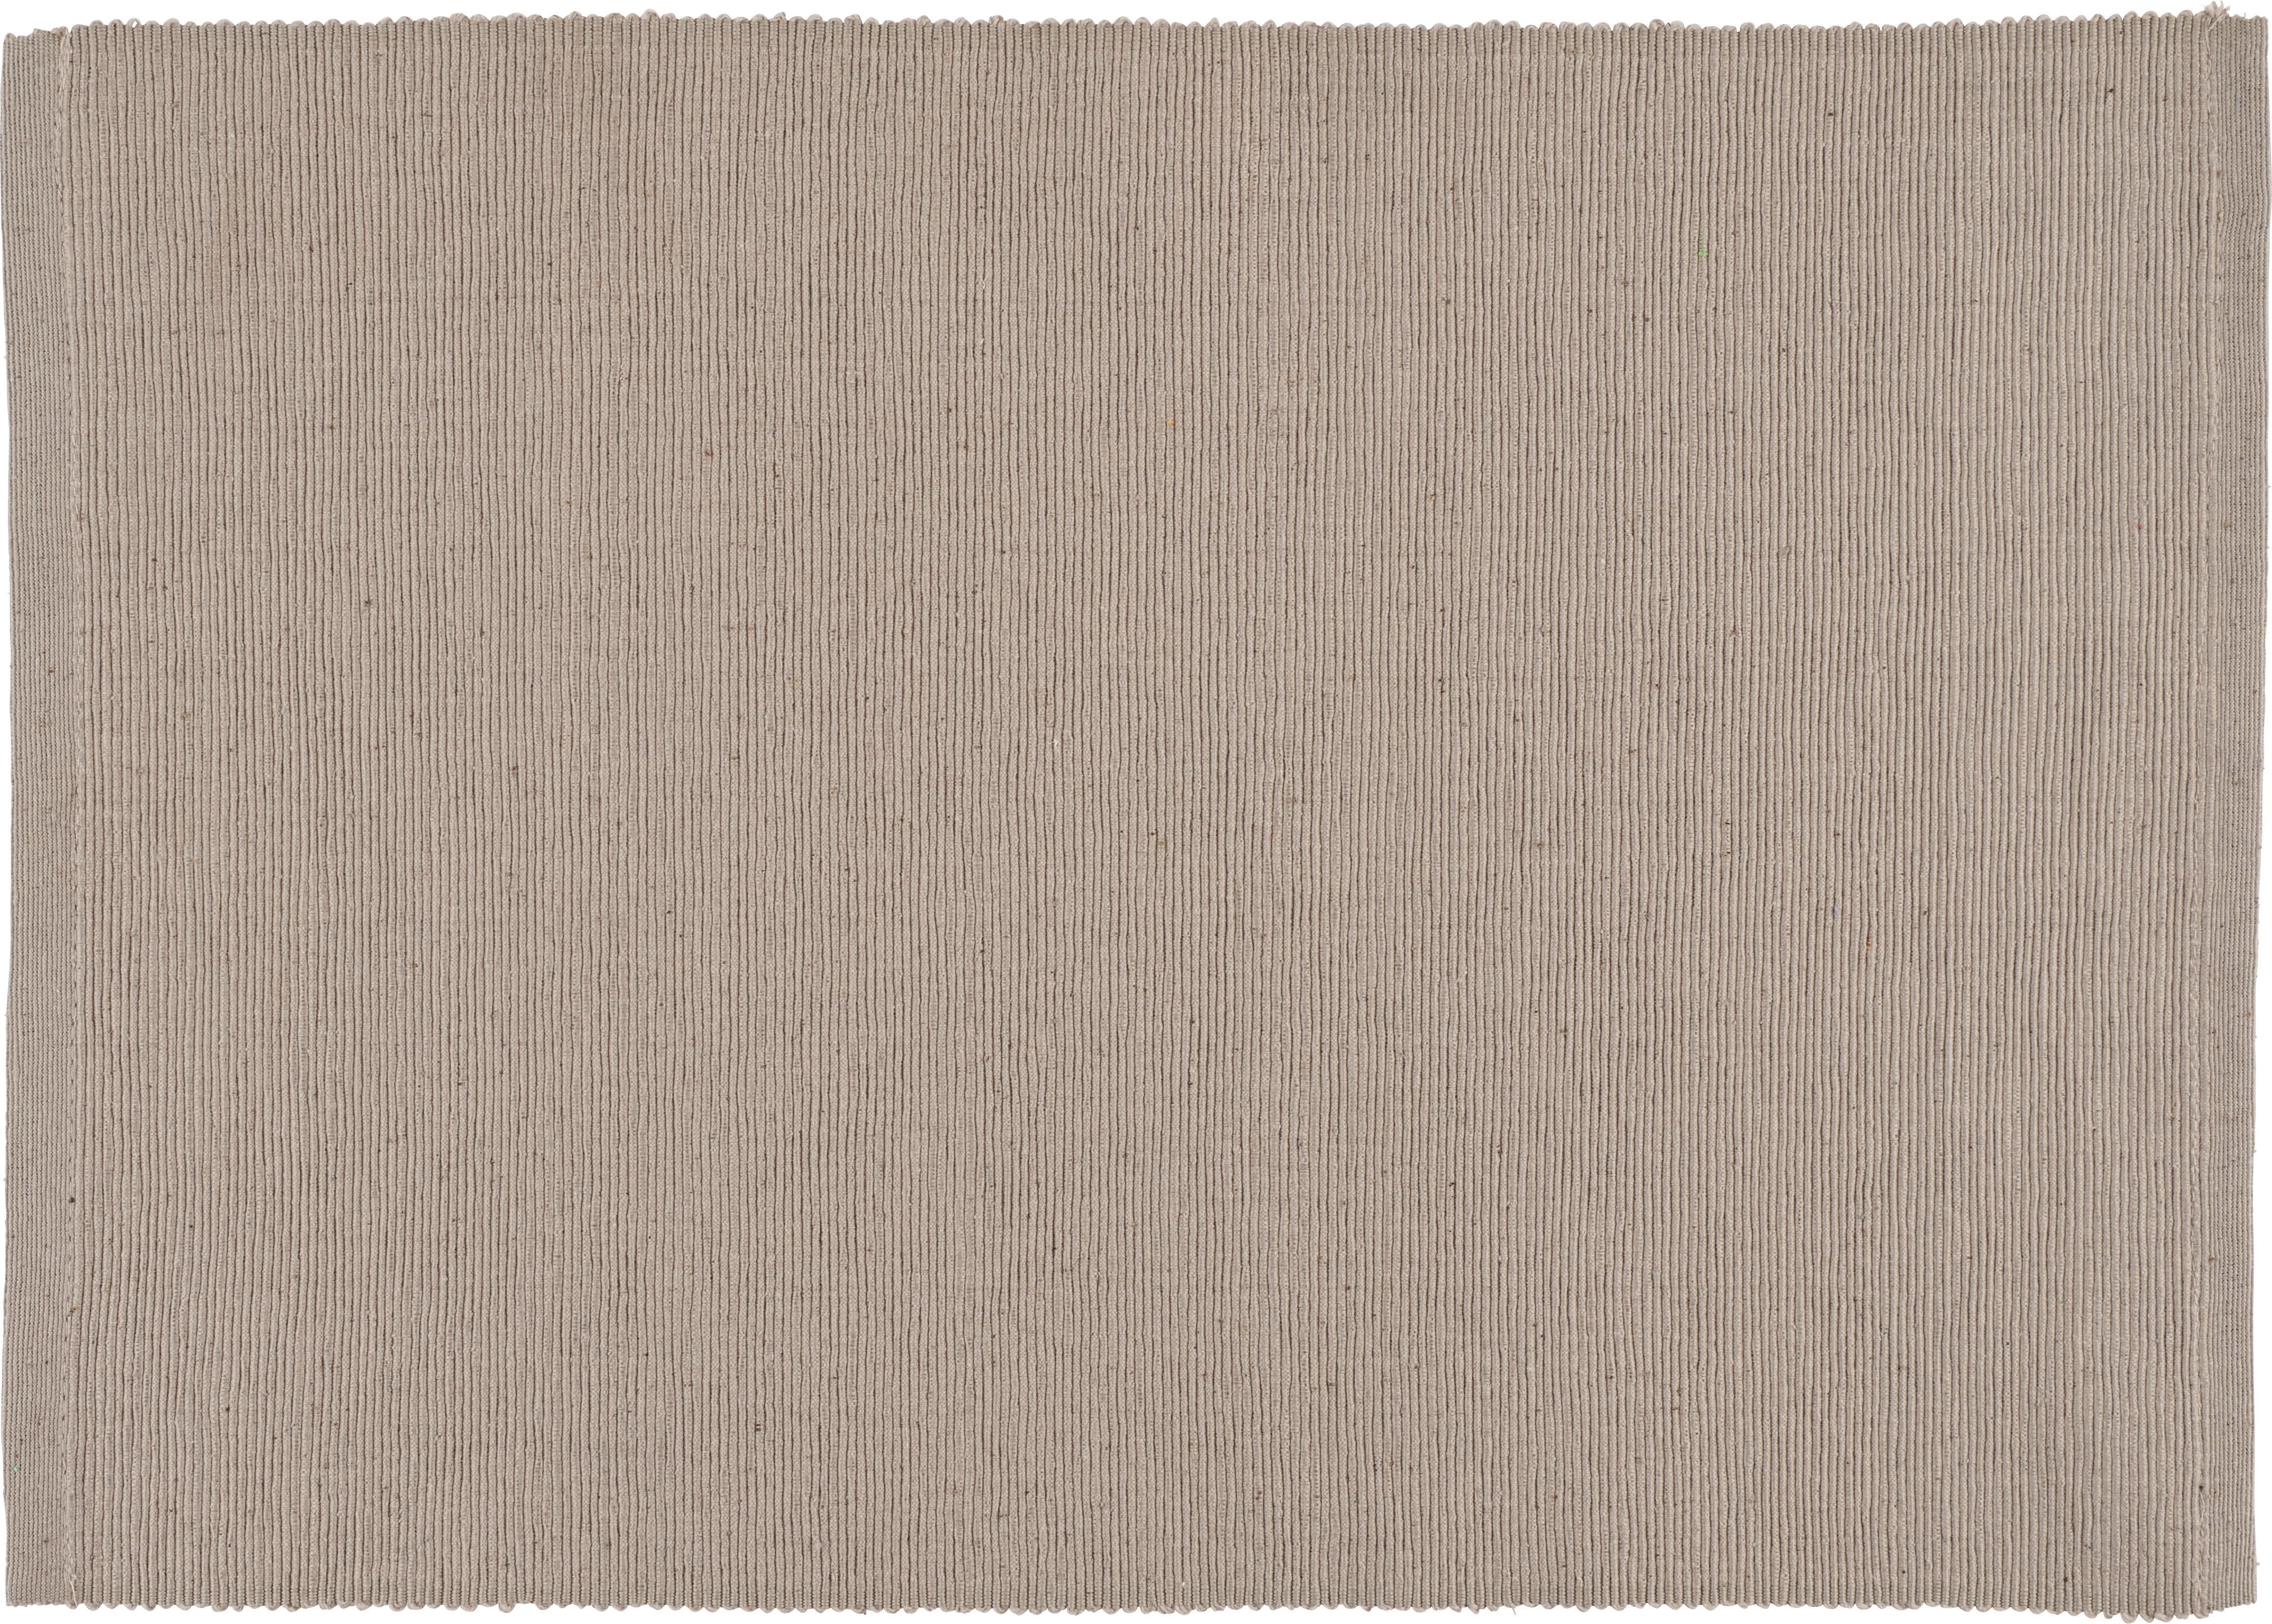 Tischset Maren Stein - Grau, Textil (33/45cm) - Based